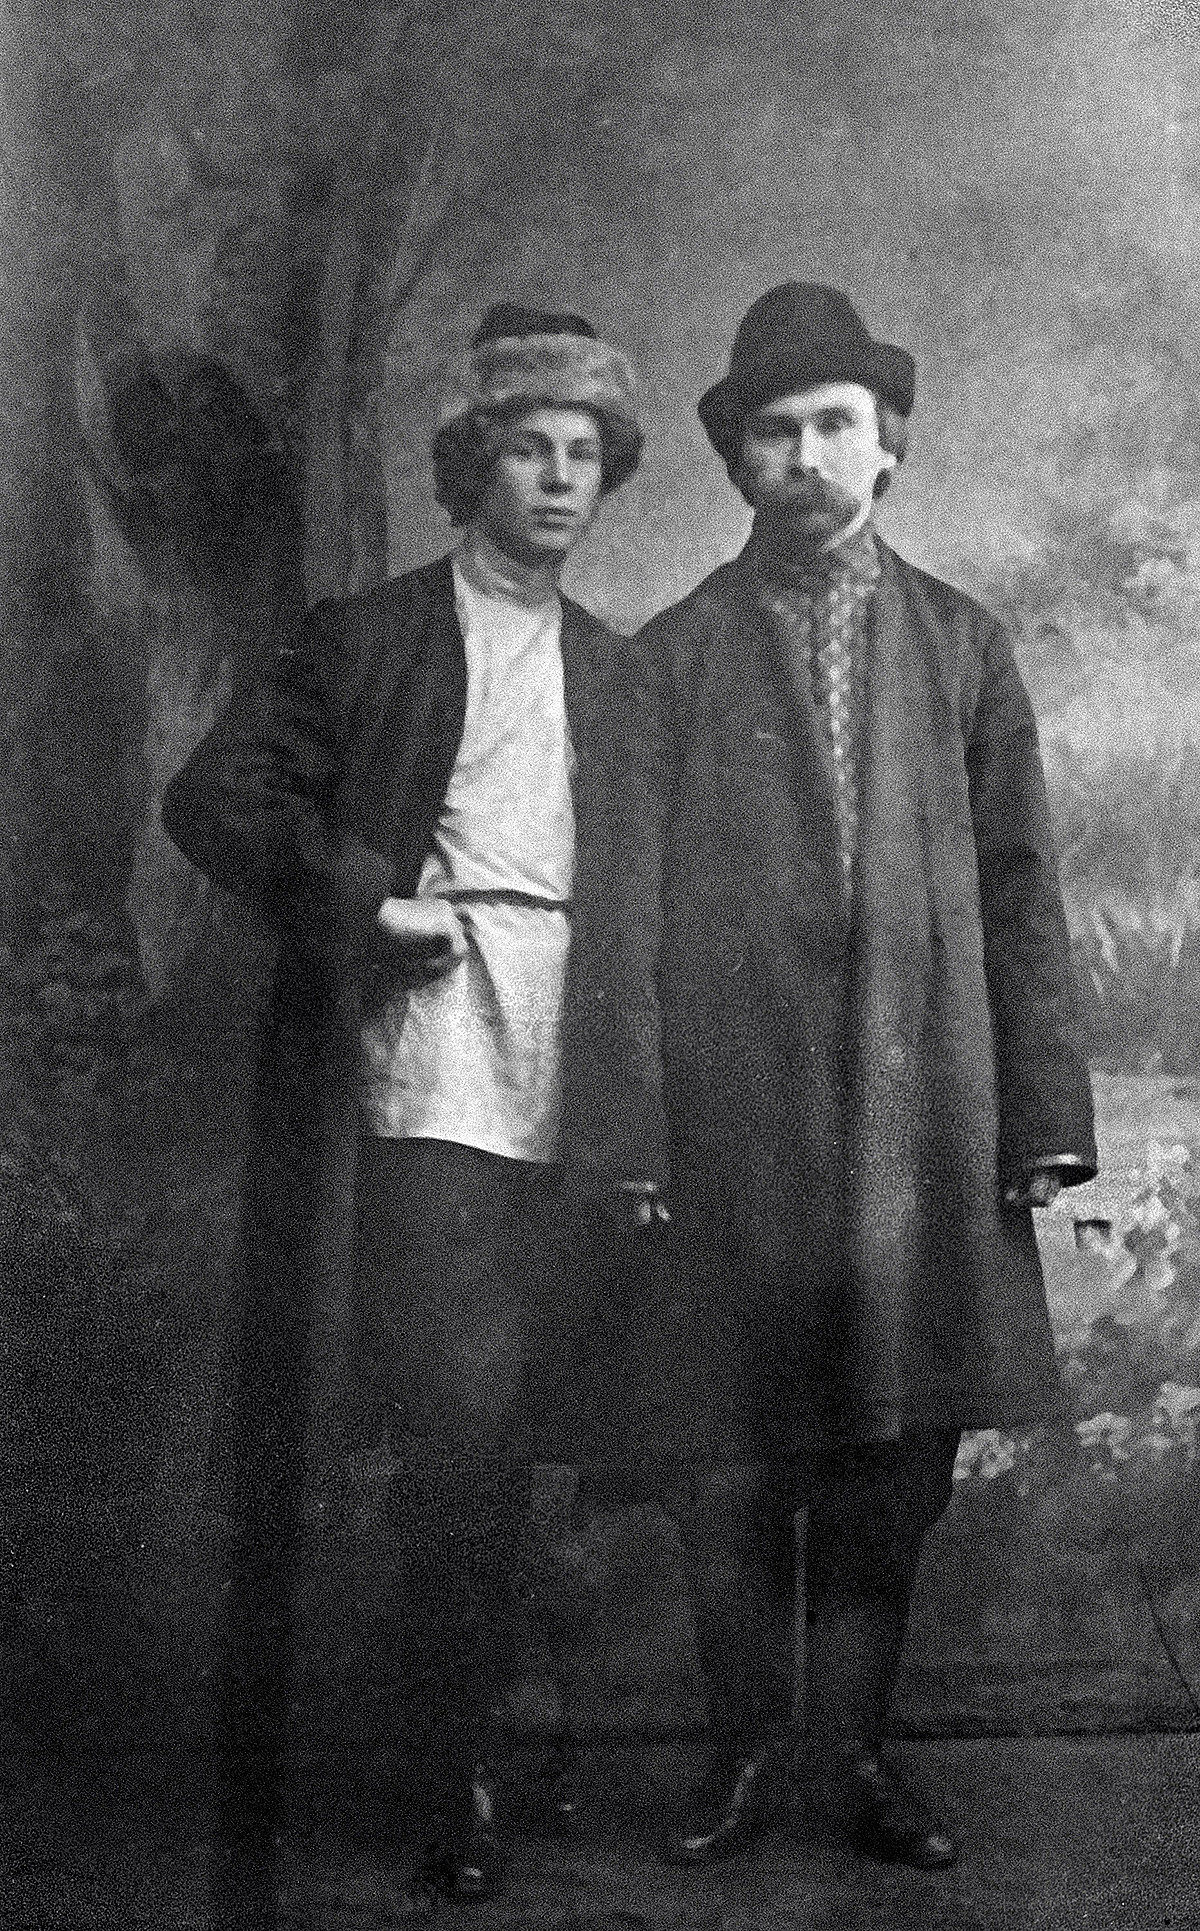 セルゲイ・エセーニン（左側）とニコライ・クリュエフ